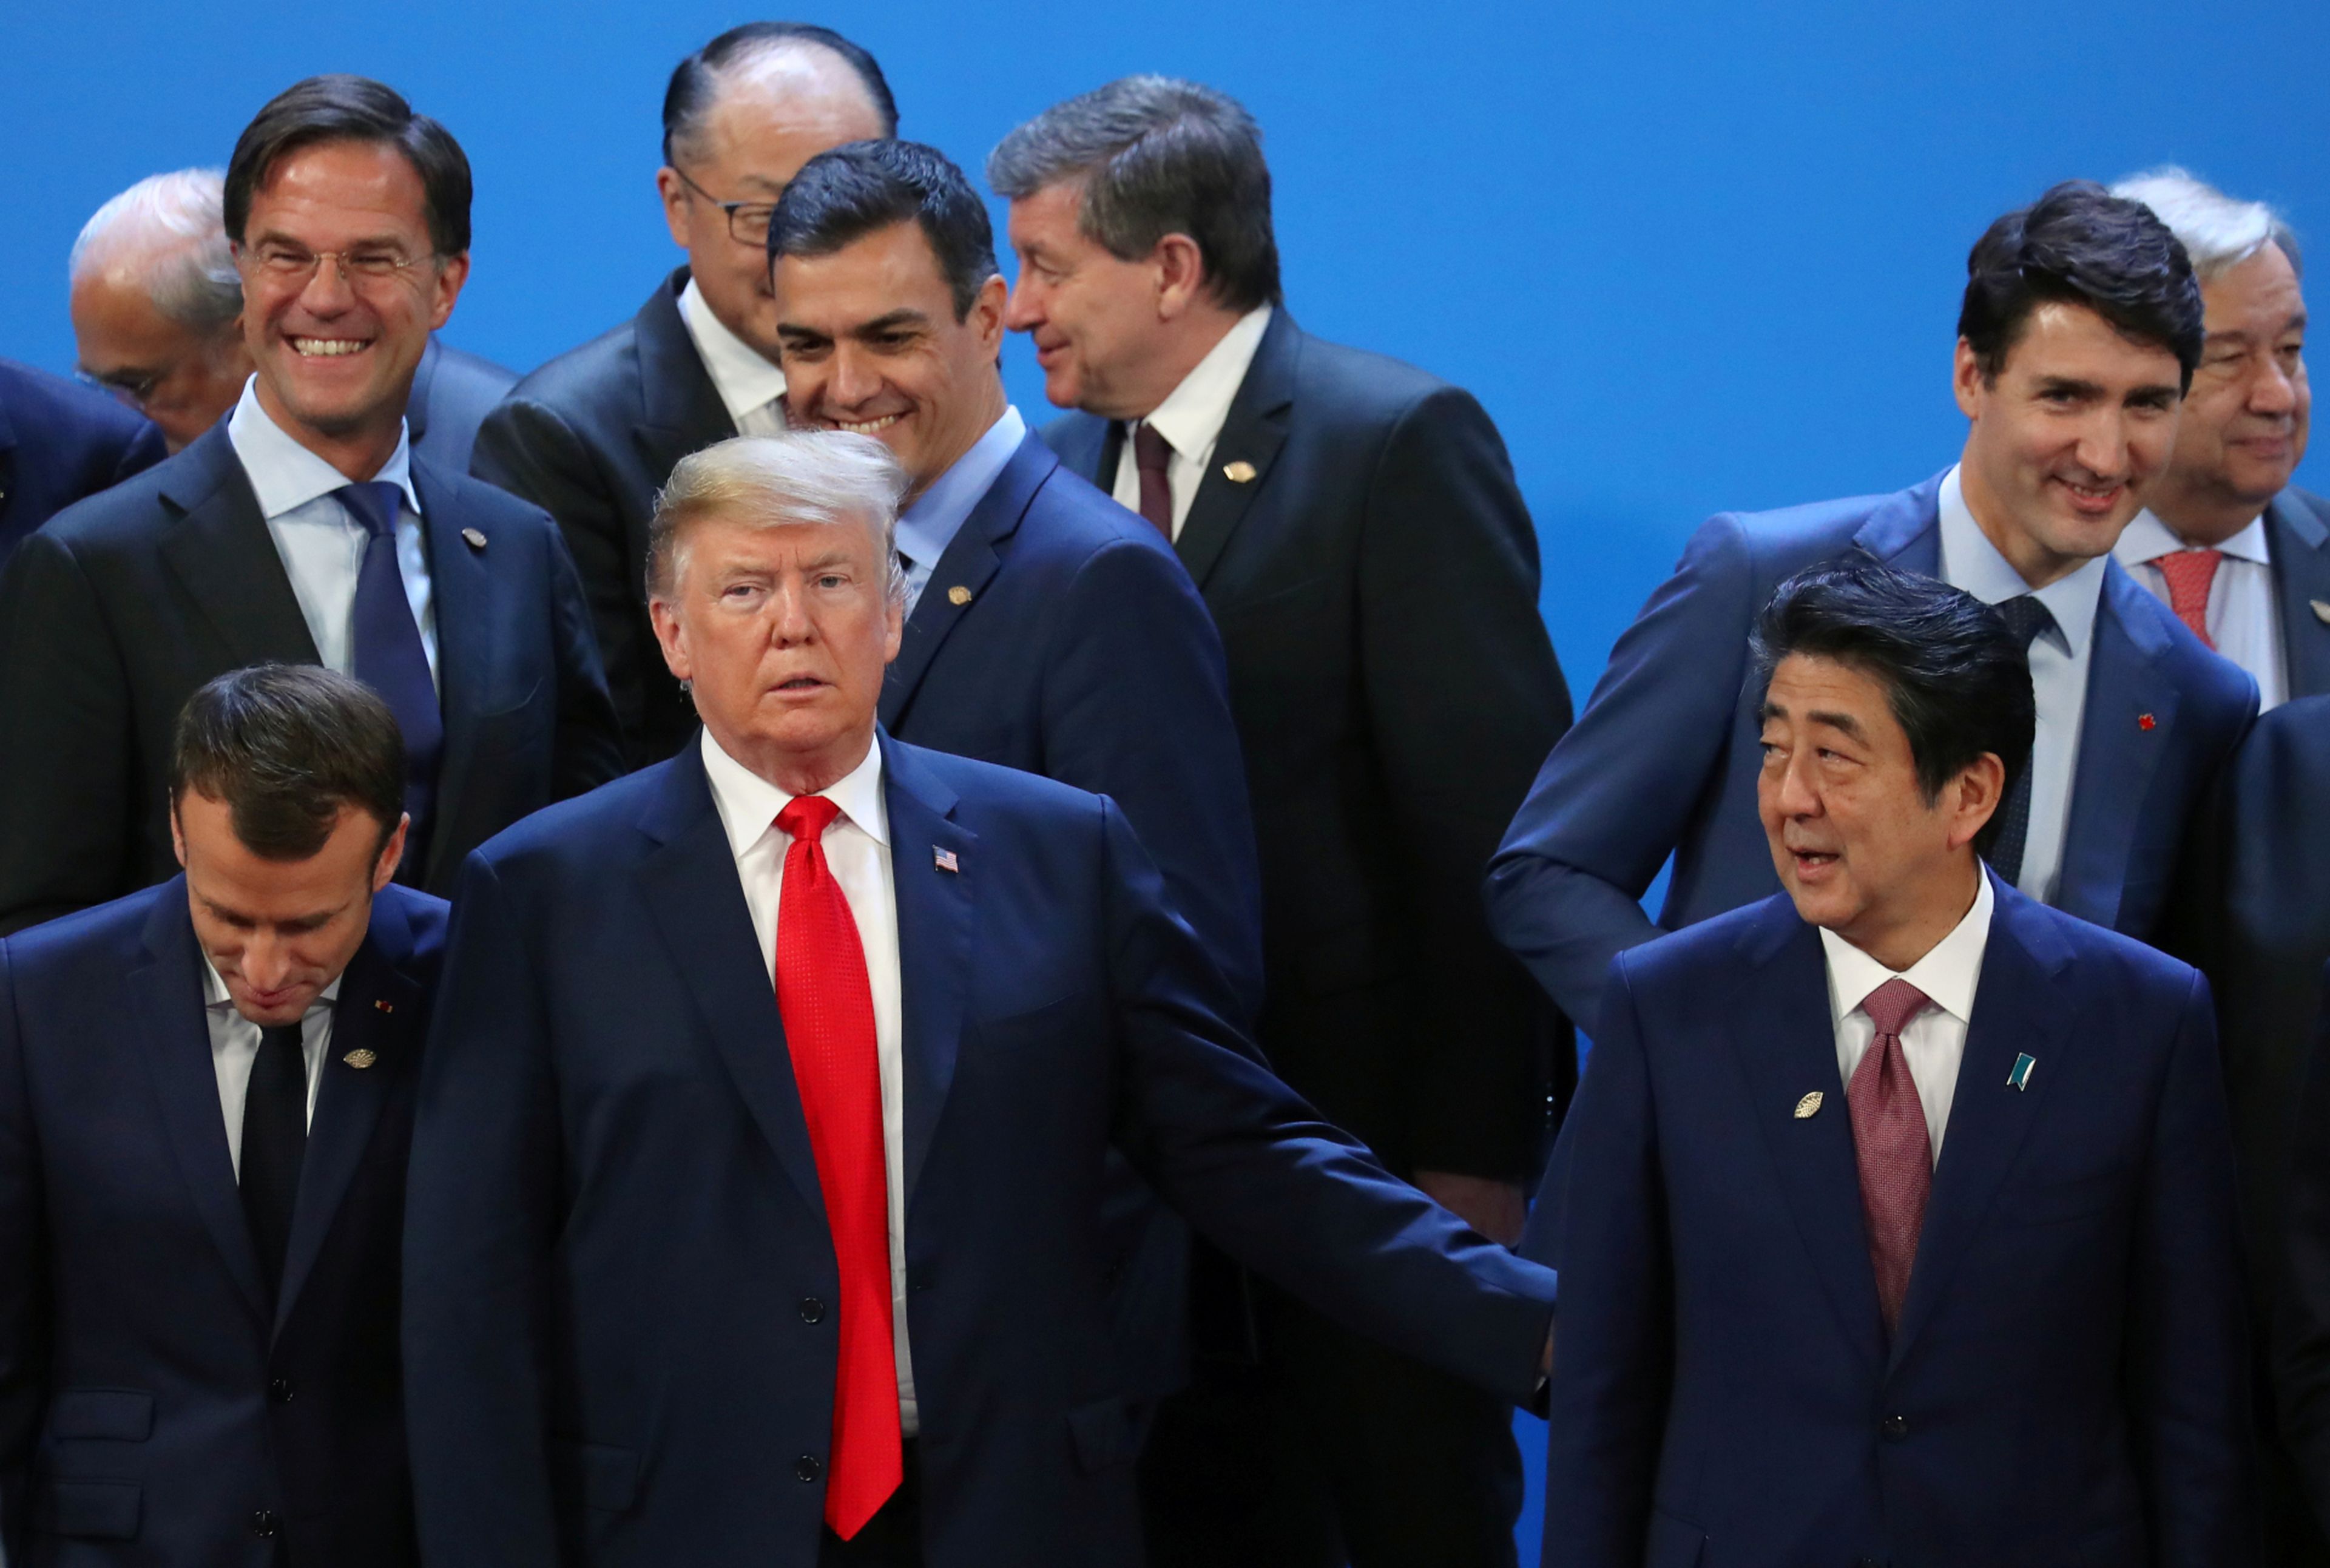 El presidente de EE.UU., Donald Trump, junto a sus homólogos francés, Emmanuel Macron, y español, Pedro Sánchez, y los primeros ministros de Canadá, Justin Trudeau, y Japón, Shinzo Abe